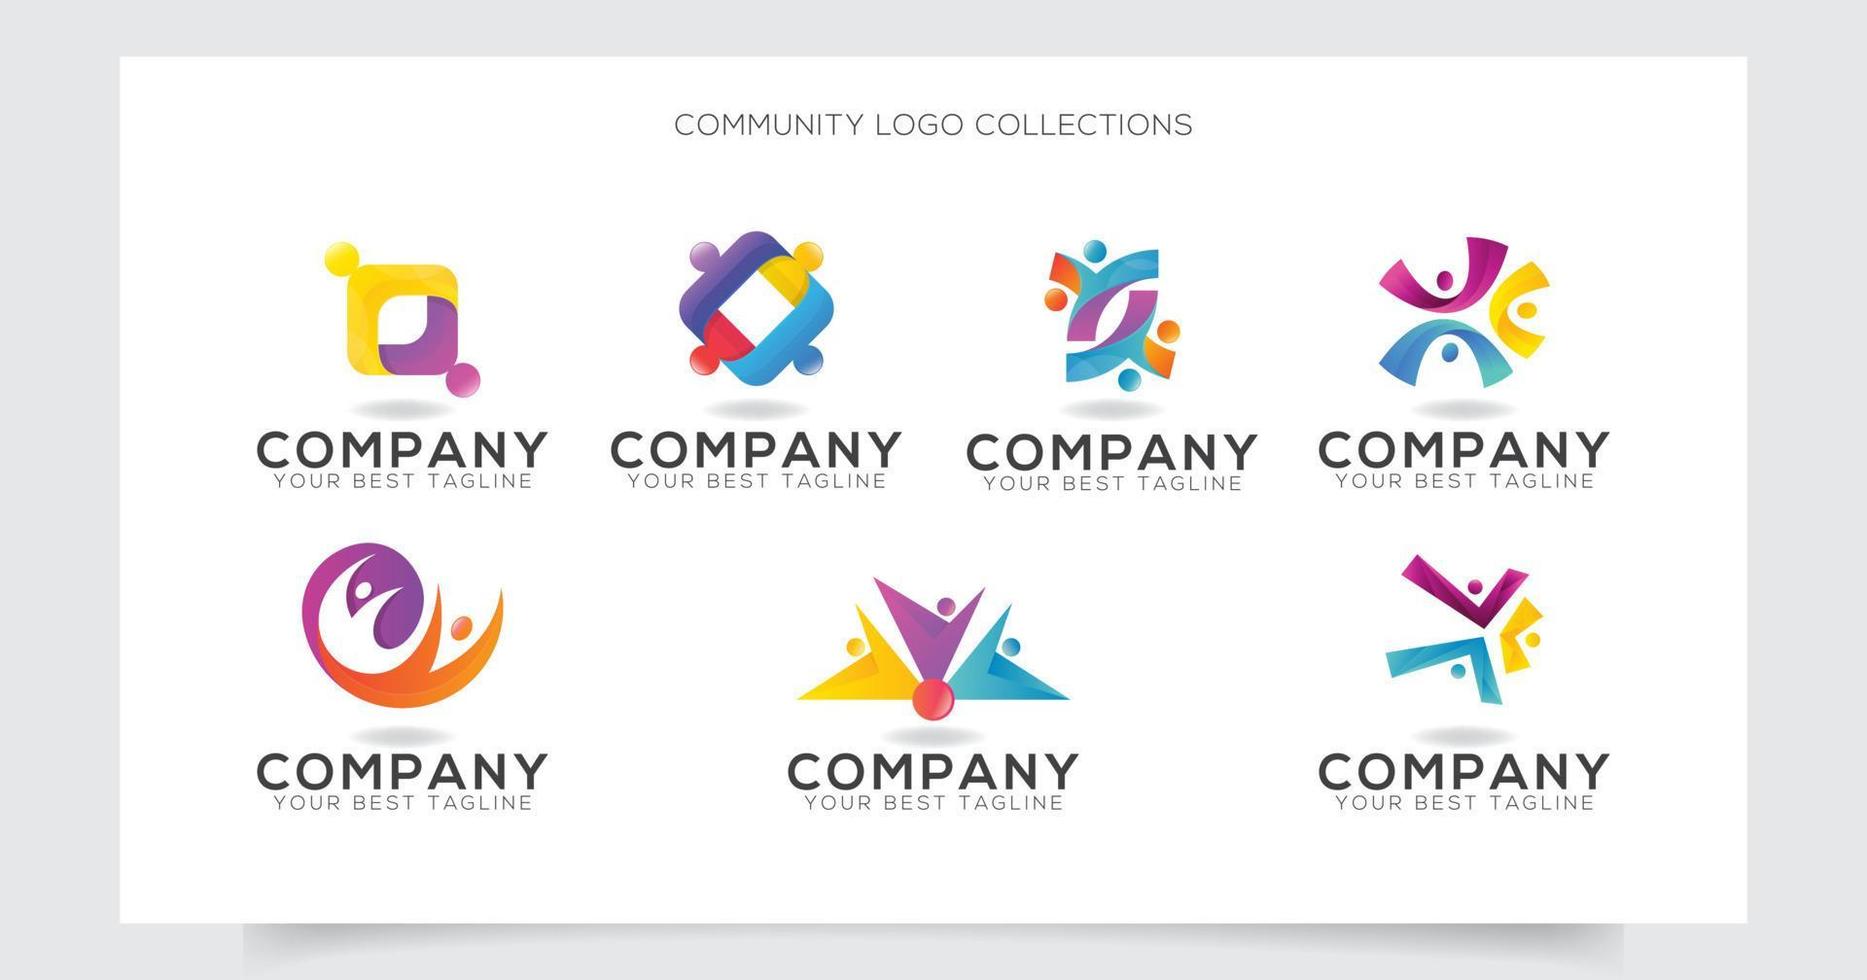 modelo de design de coleção de logotipo de cuidados comunitários vetor